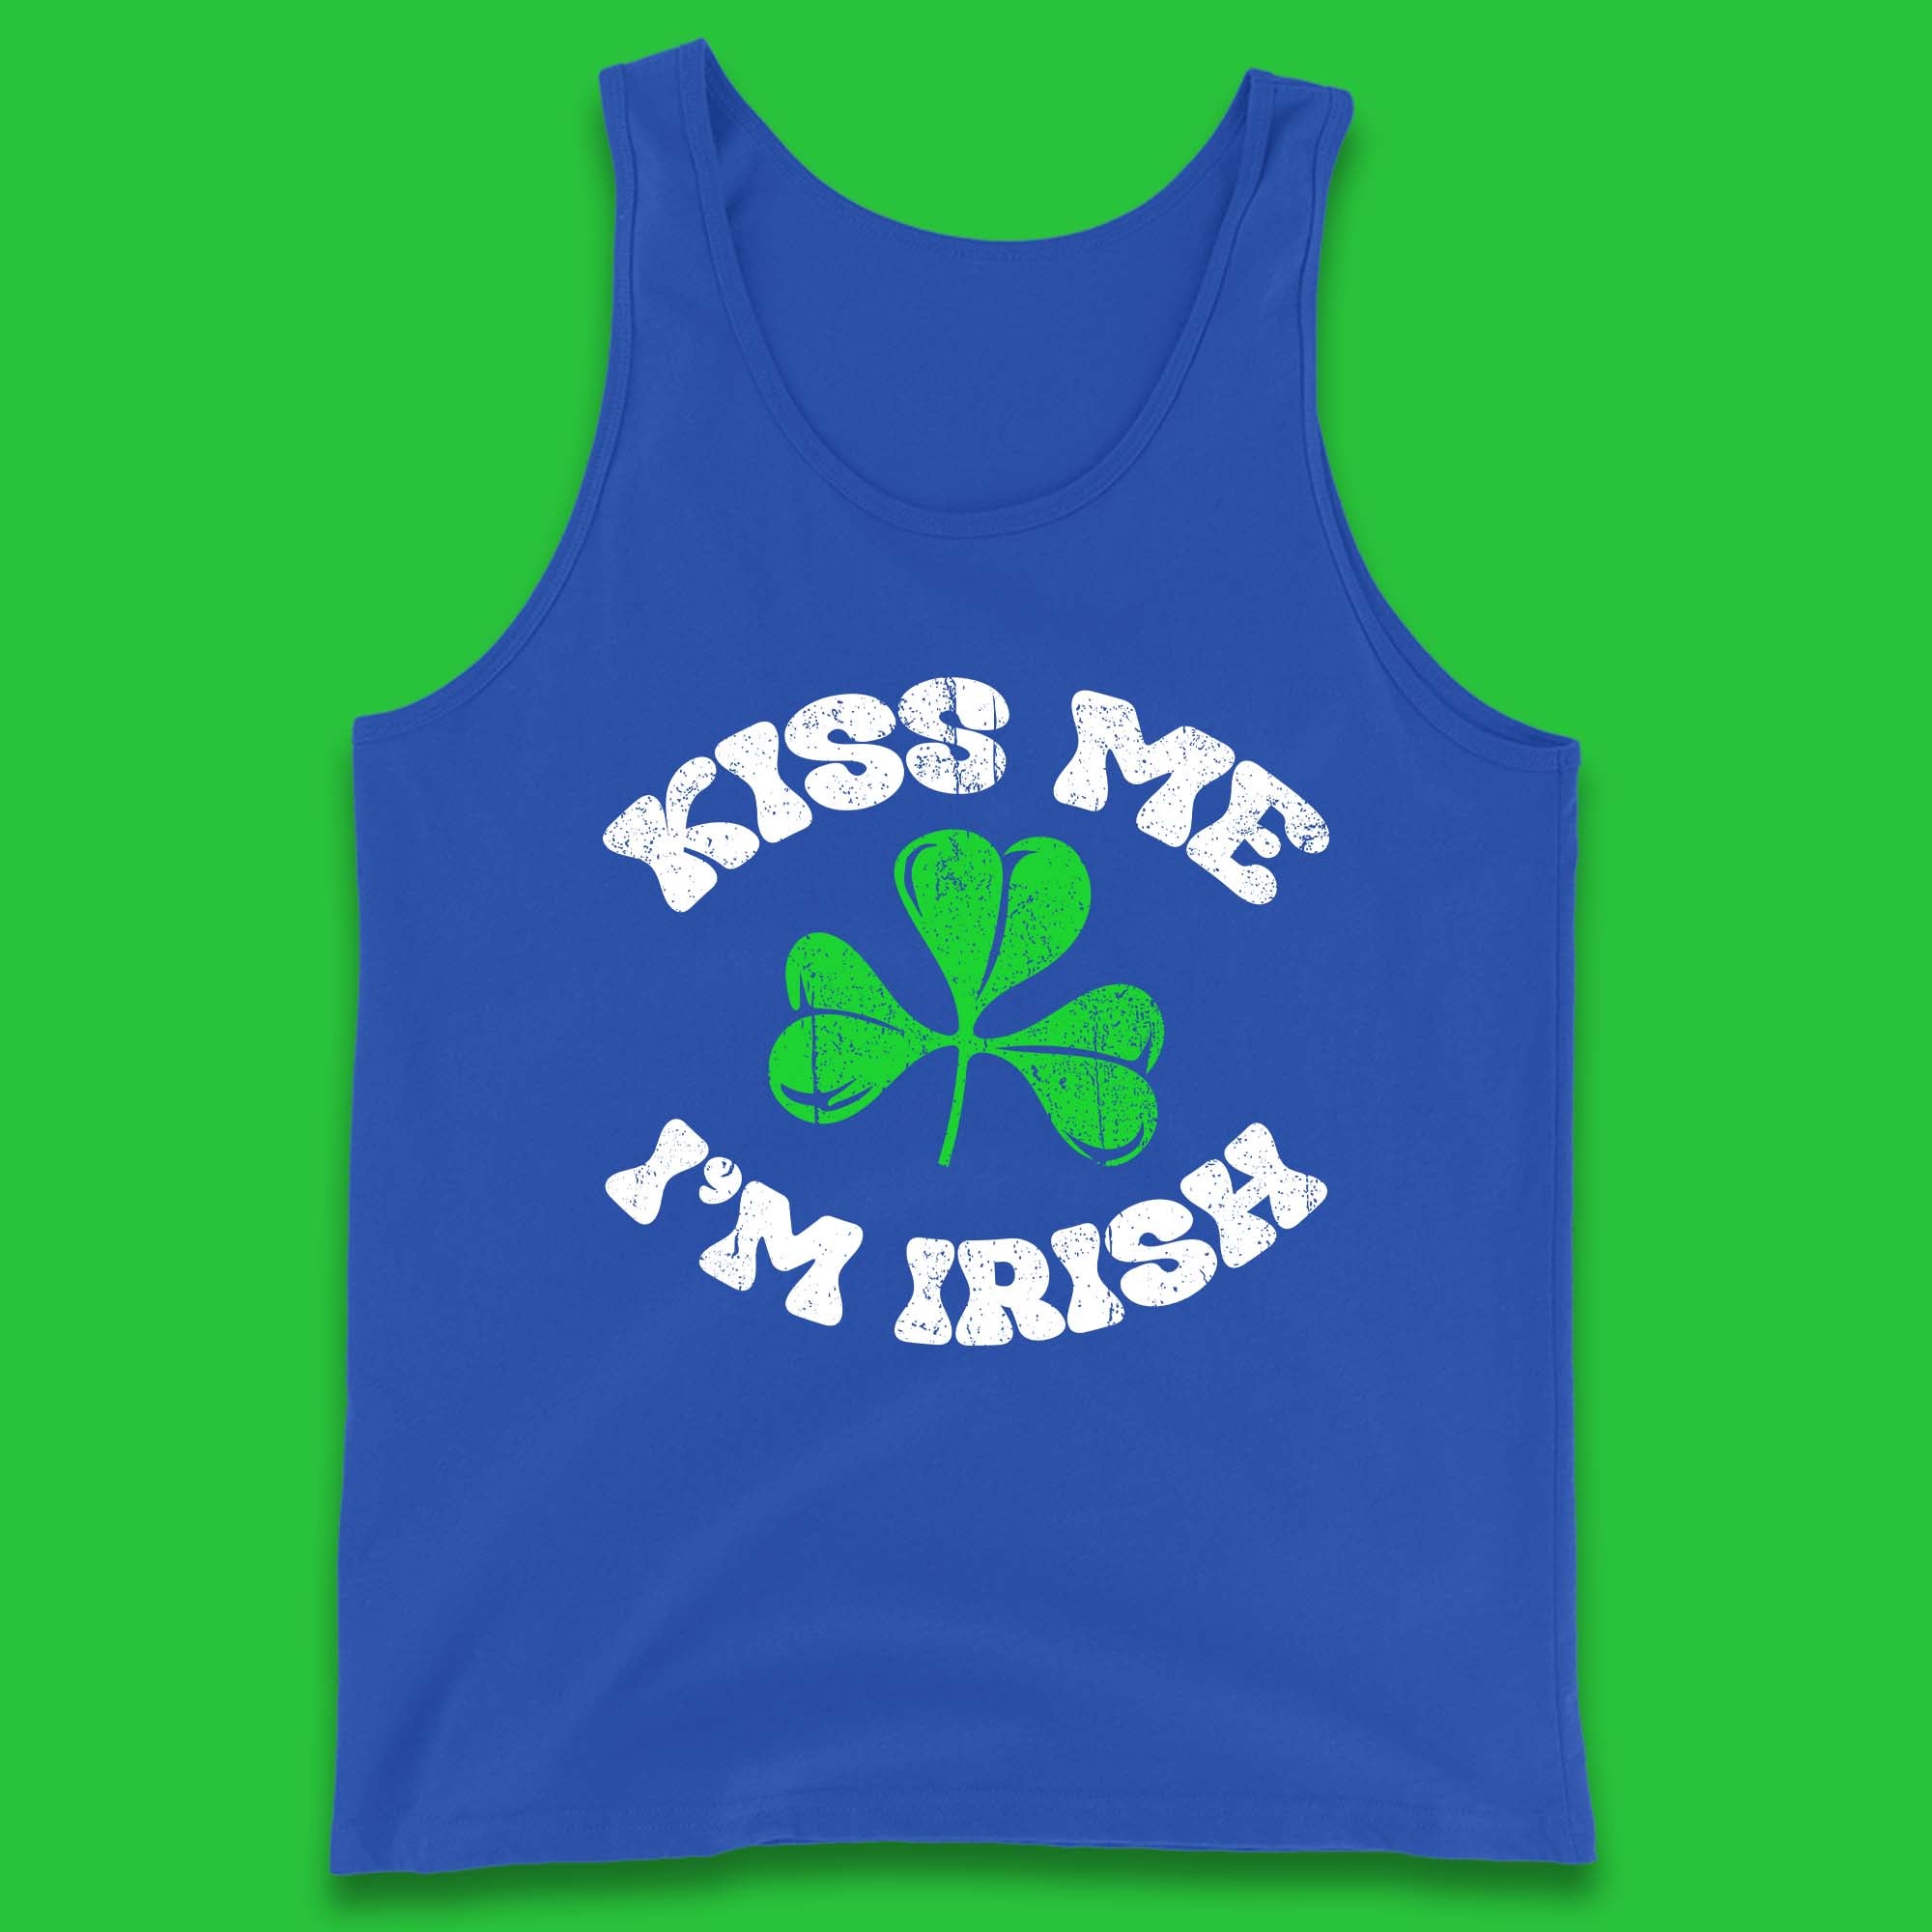 Kiss Me I'm Irish St. Patrick's Day Tank Top